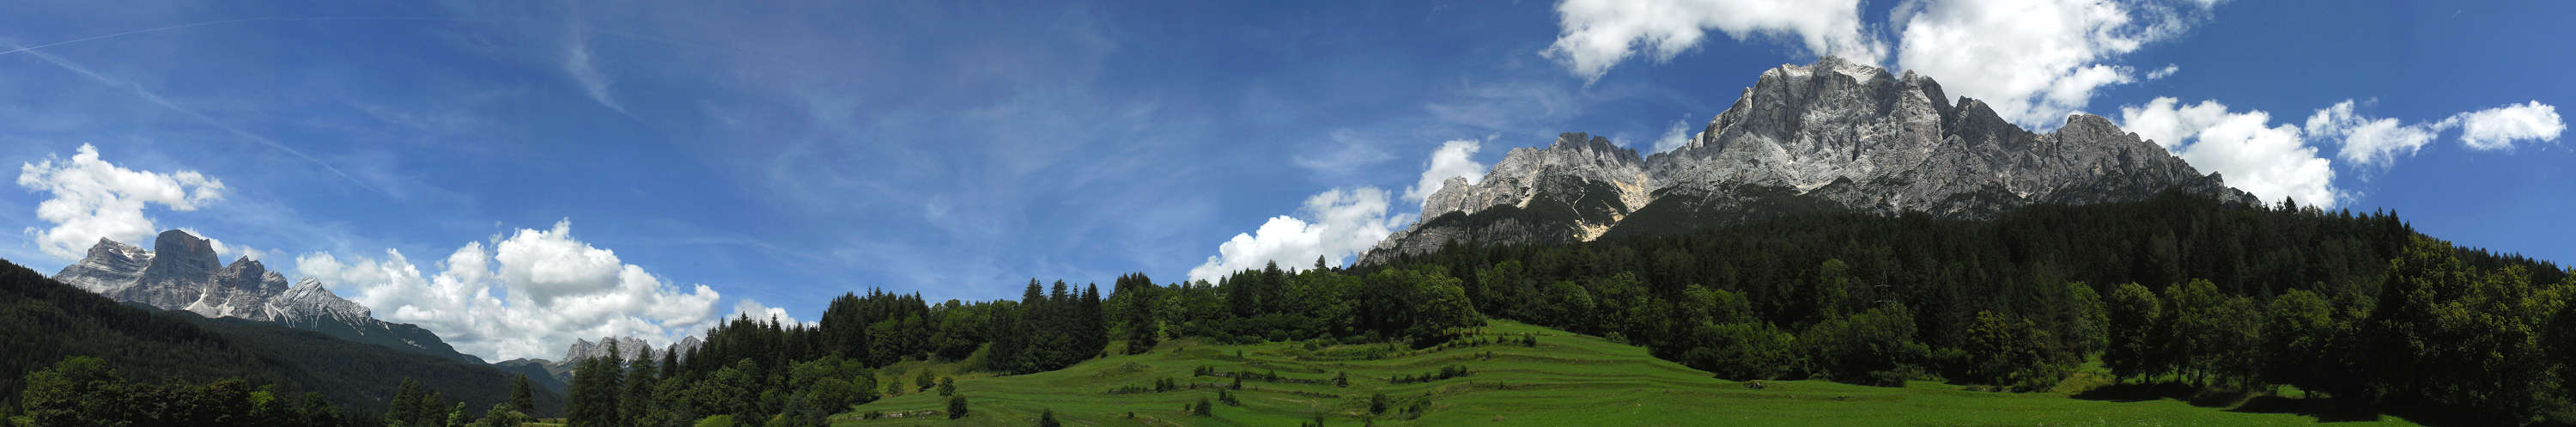 Dolomiti: monte Pelmo e monte Antelao - Val d'Ampezzo